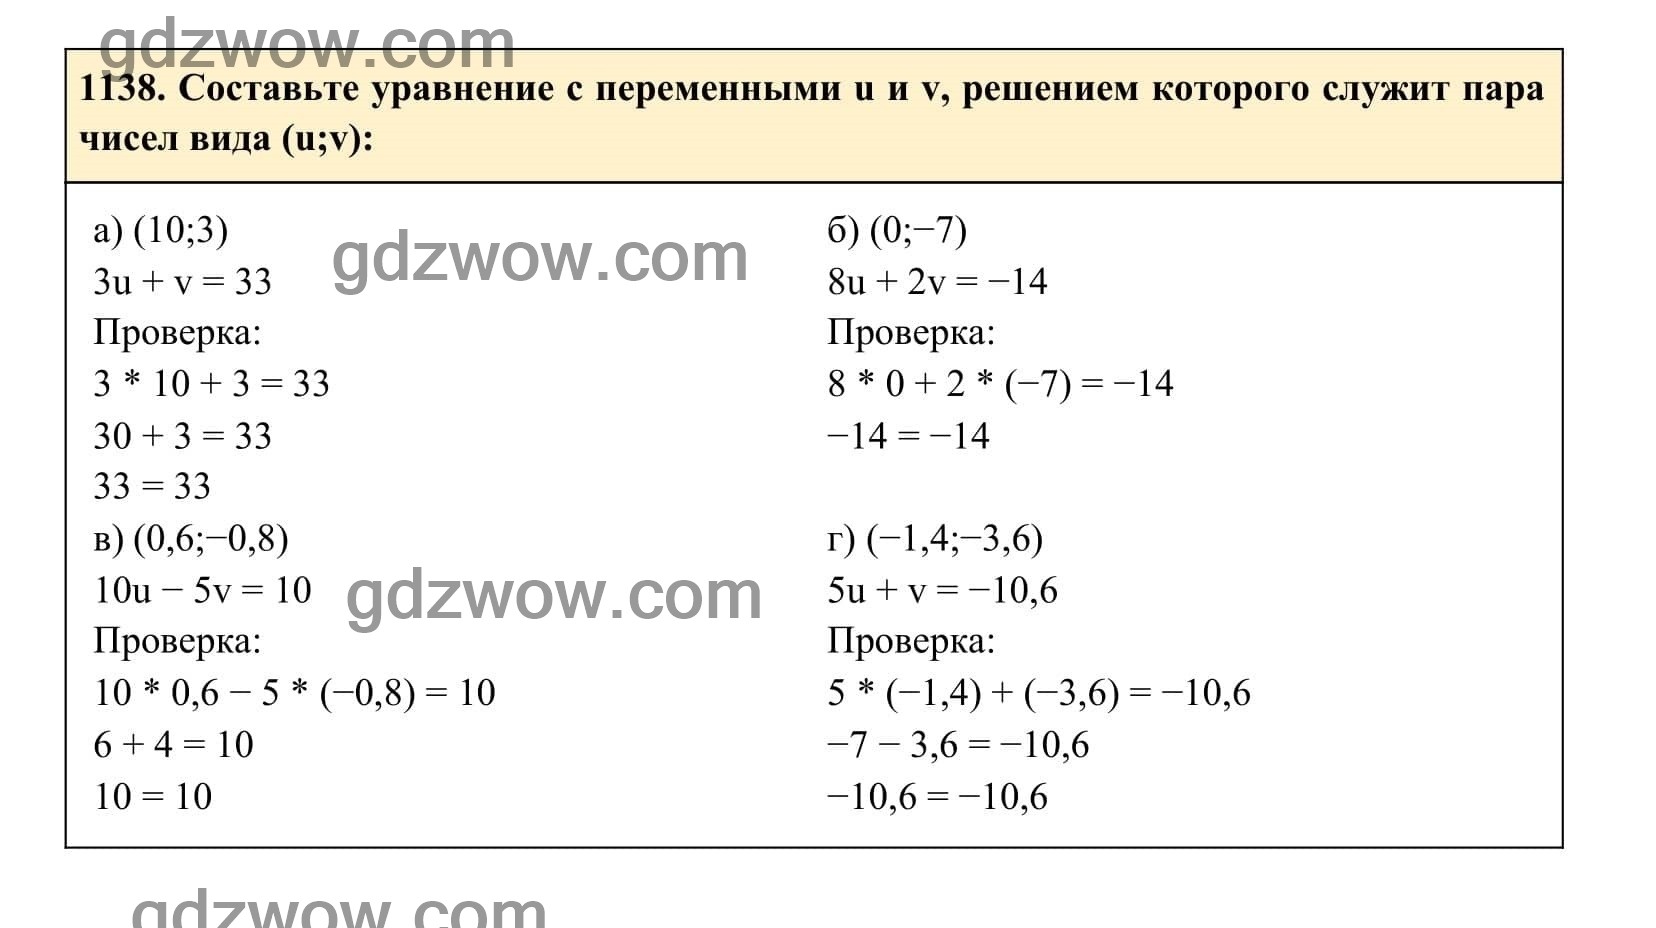 Упражнение 1138 - ГДЗ по Алгебре 7 класс Учебник Макарычев (решебник) - GDZwow